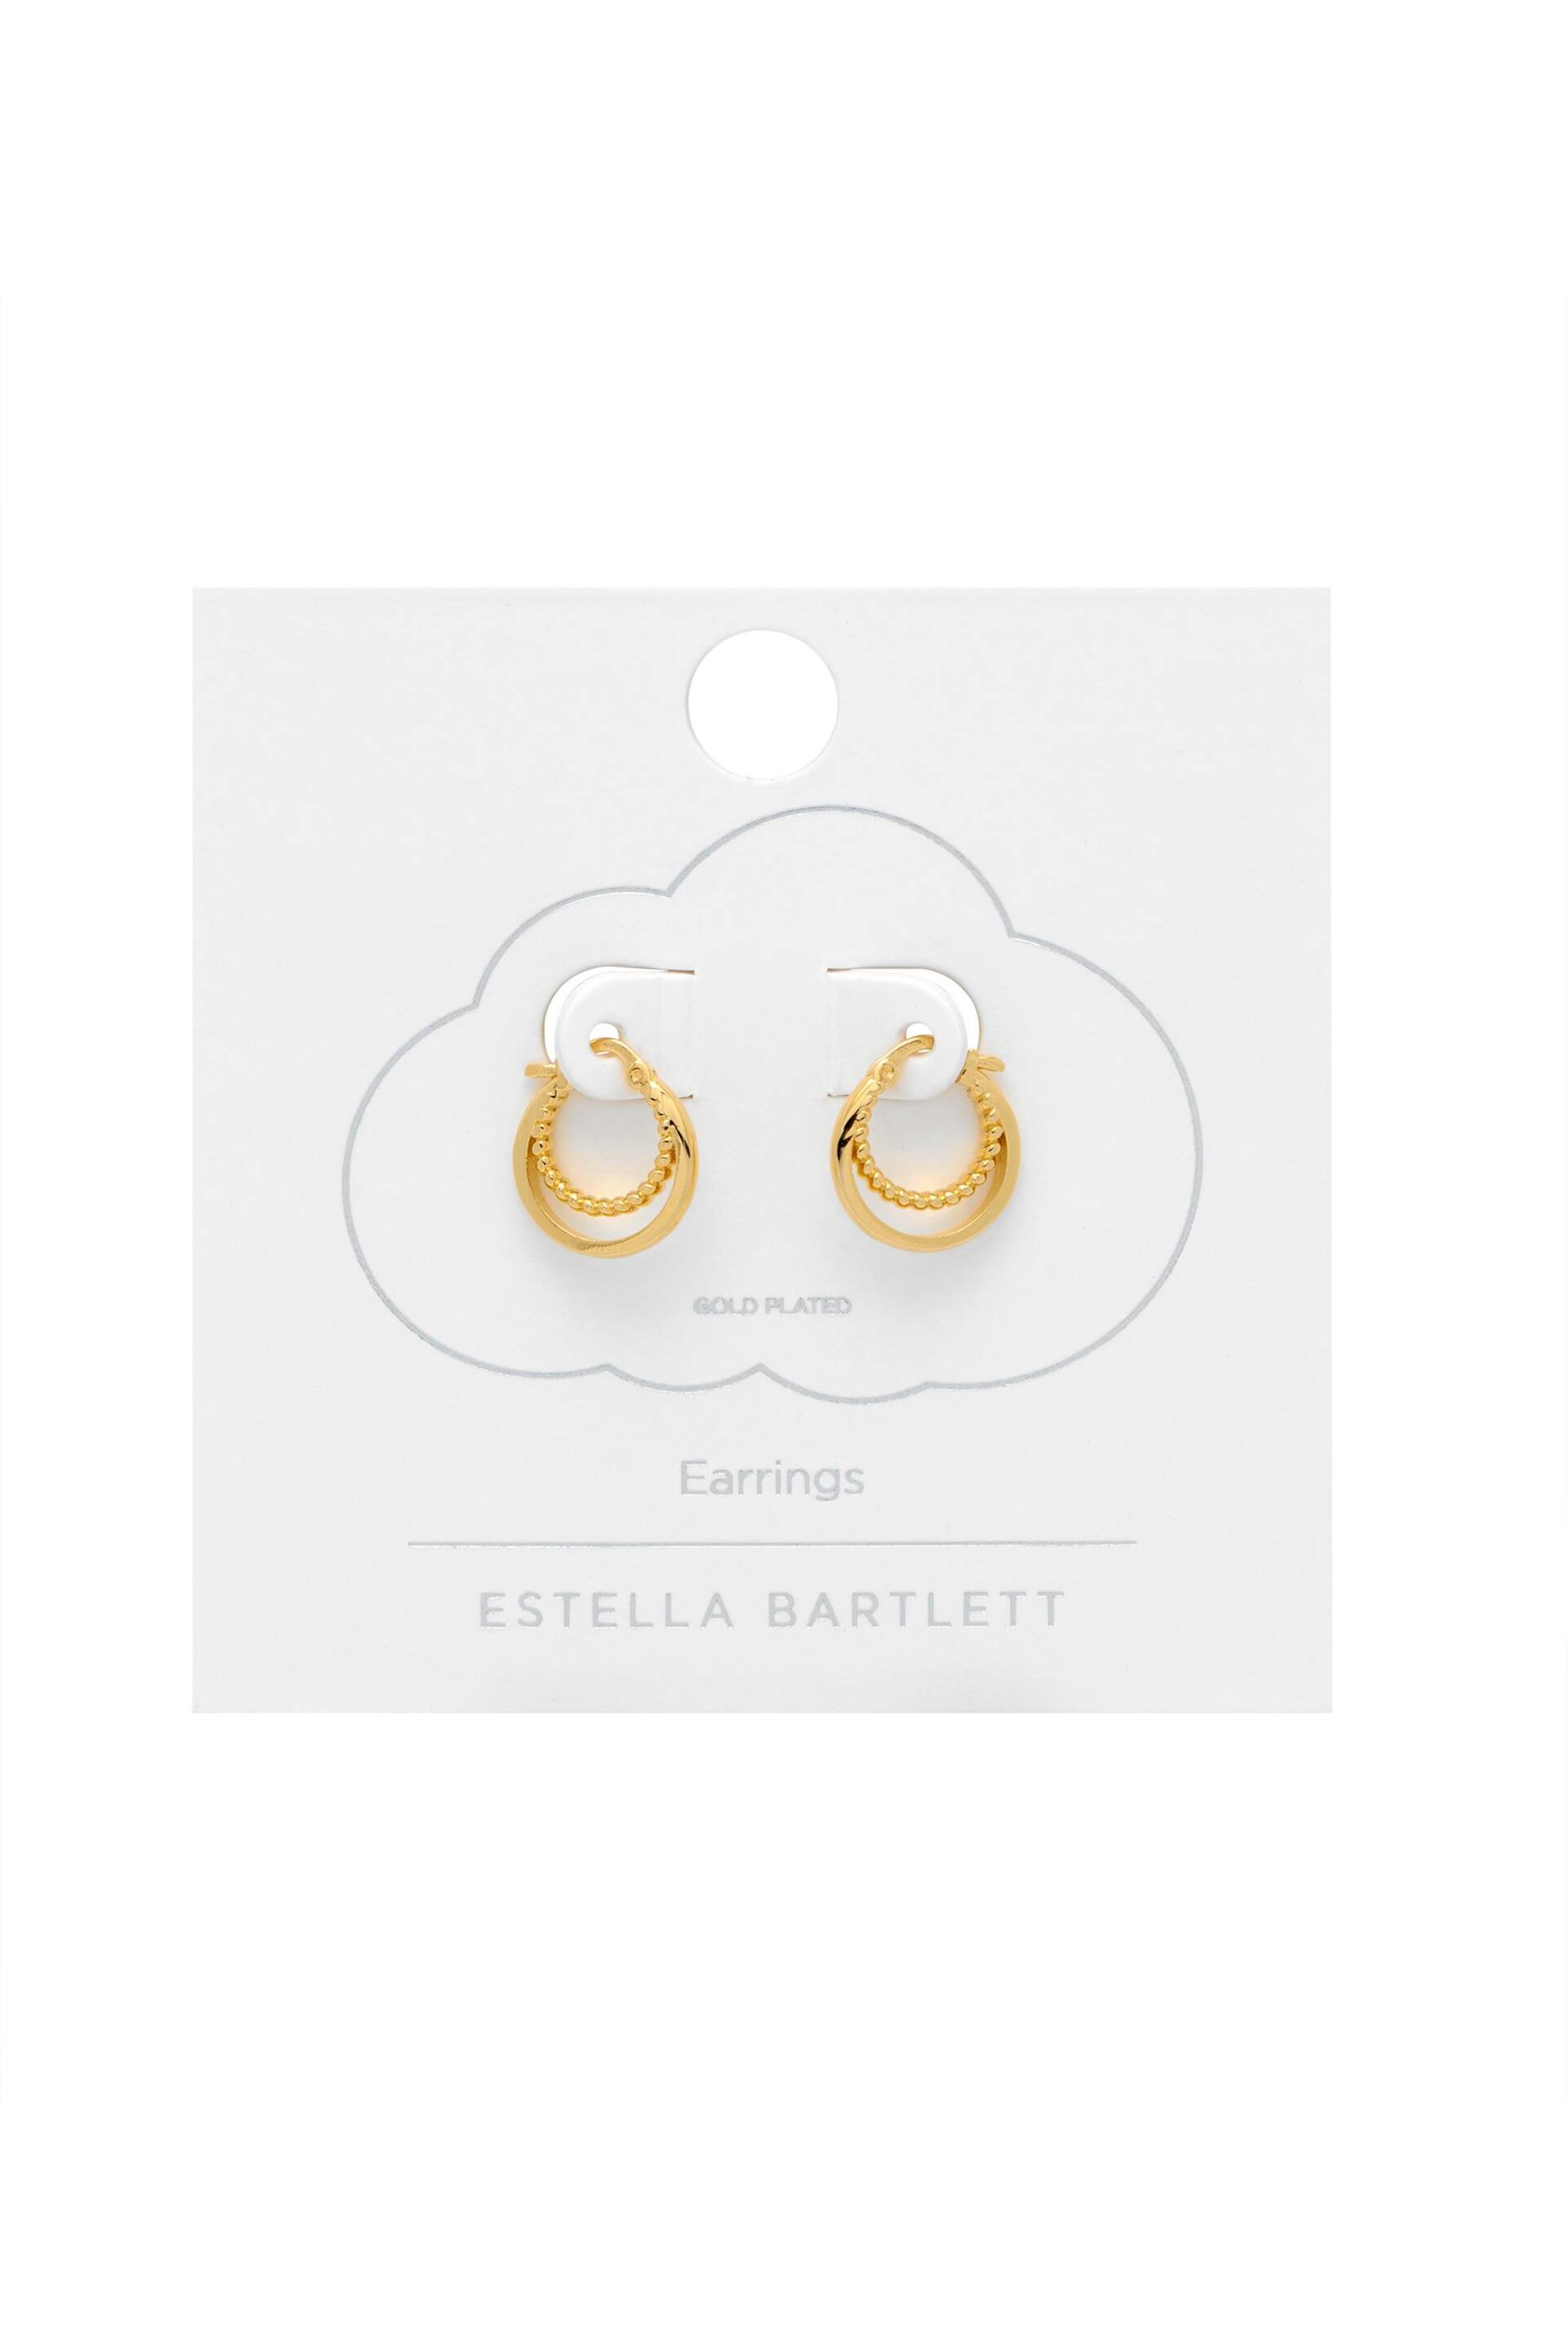 Estella Bartlett Gold Double Twisted Hoop Earrings - Image 2 of 3